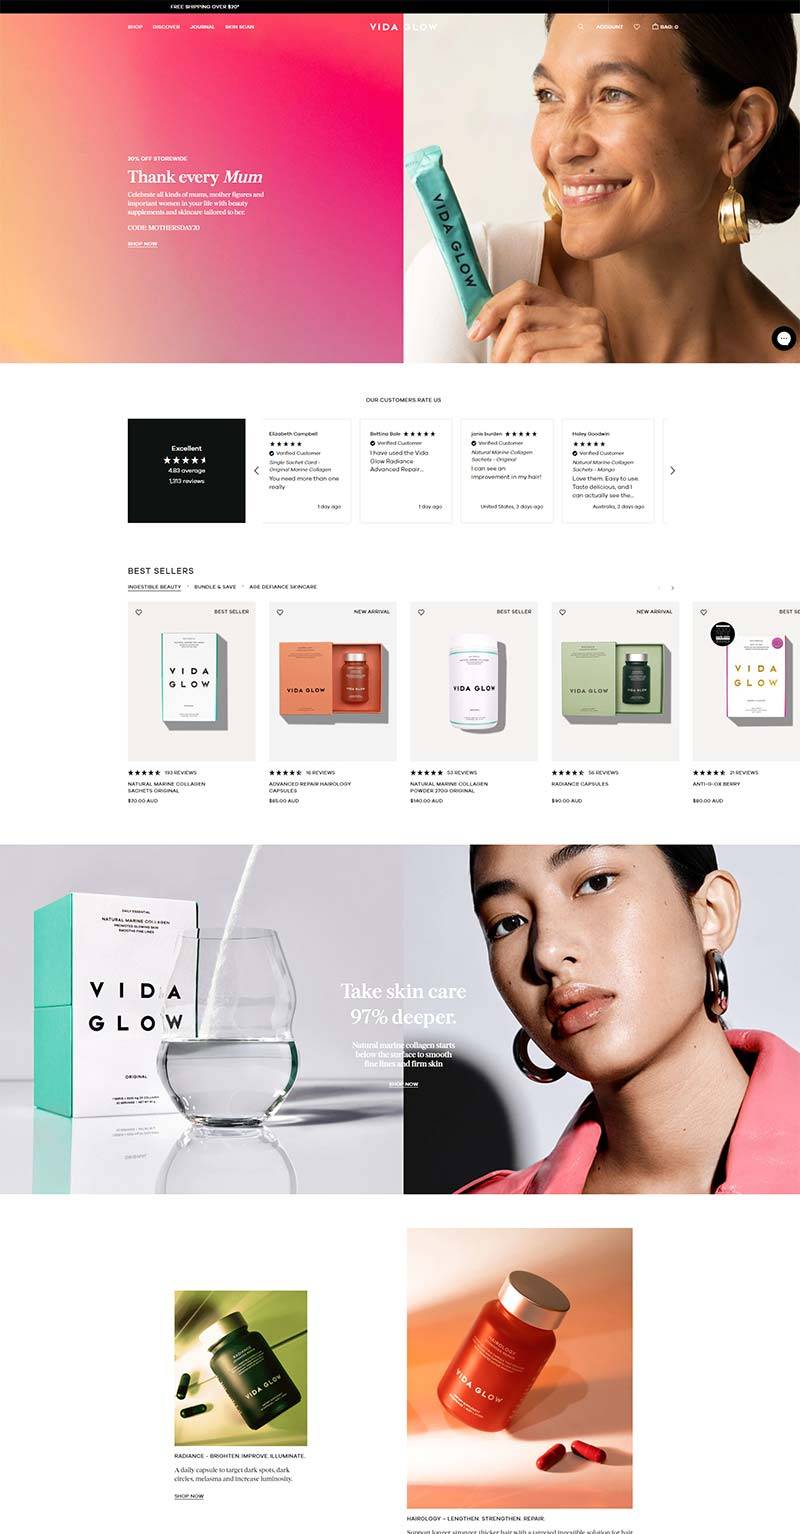 Vida Glow 澳大利亚天然胶原蛋白品牌购物网站